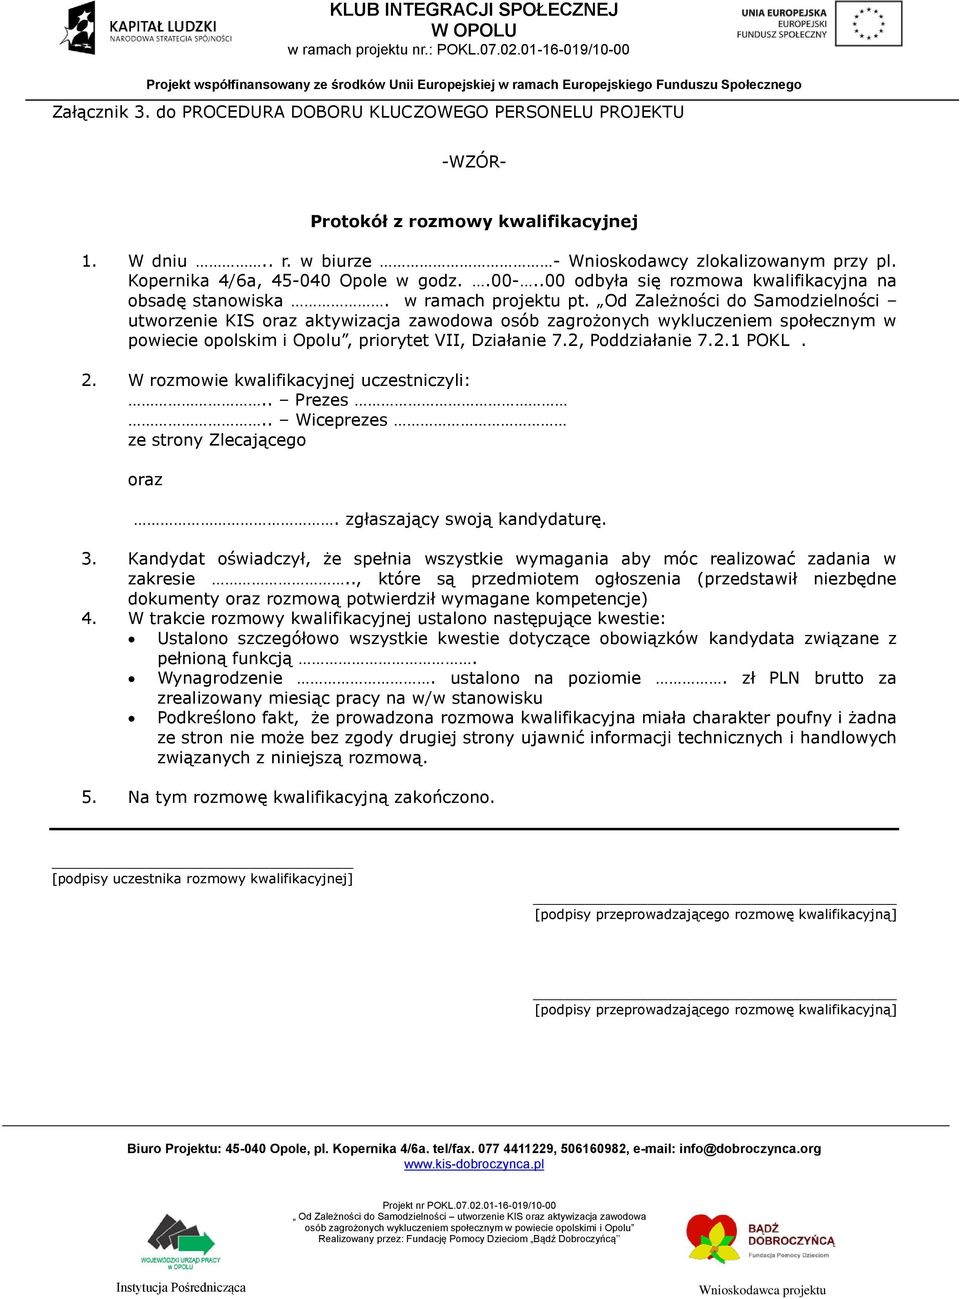 Od Zależności do Samodzielności utworzenie KIS oraz aktywizacja zawodowa osób zagrożonych wykluczeniem społecznym w powiecie opolskim i Opolu, priorytet VII, Działanie 7.2, Poddziałanie 7.2.1 POKL. 2.